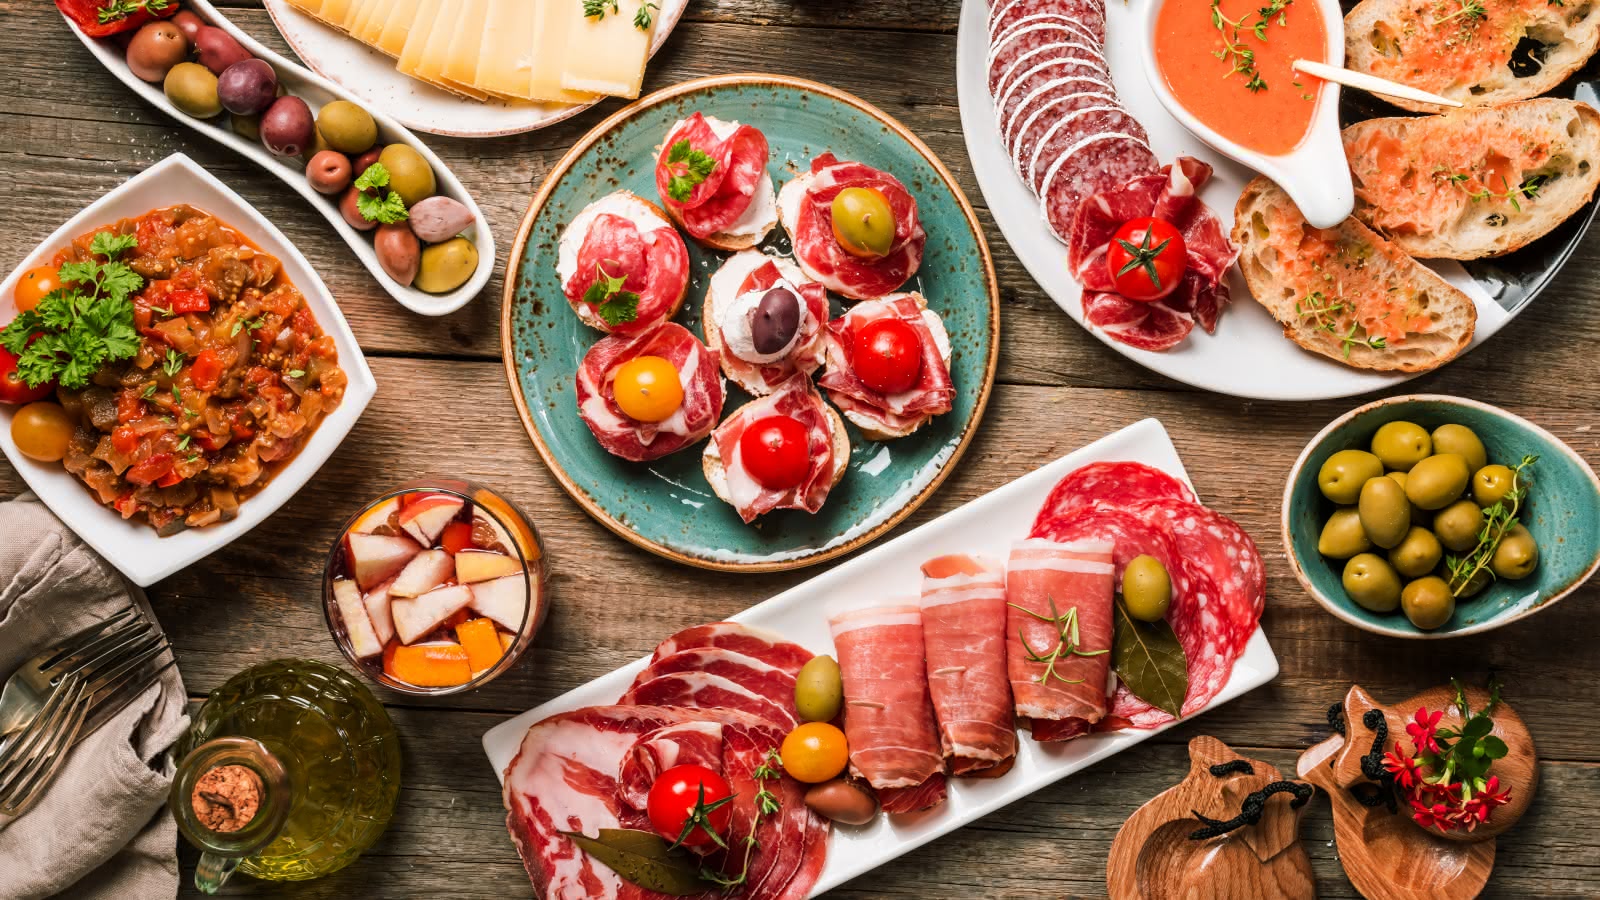 Platos de comida tradicional española